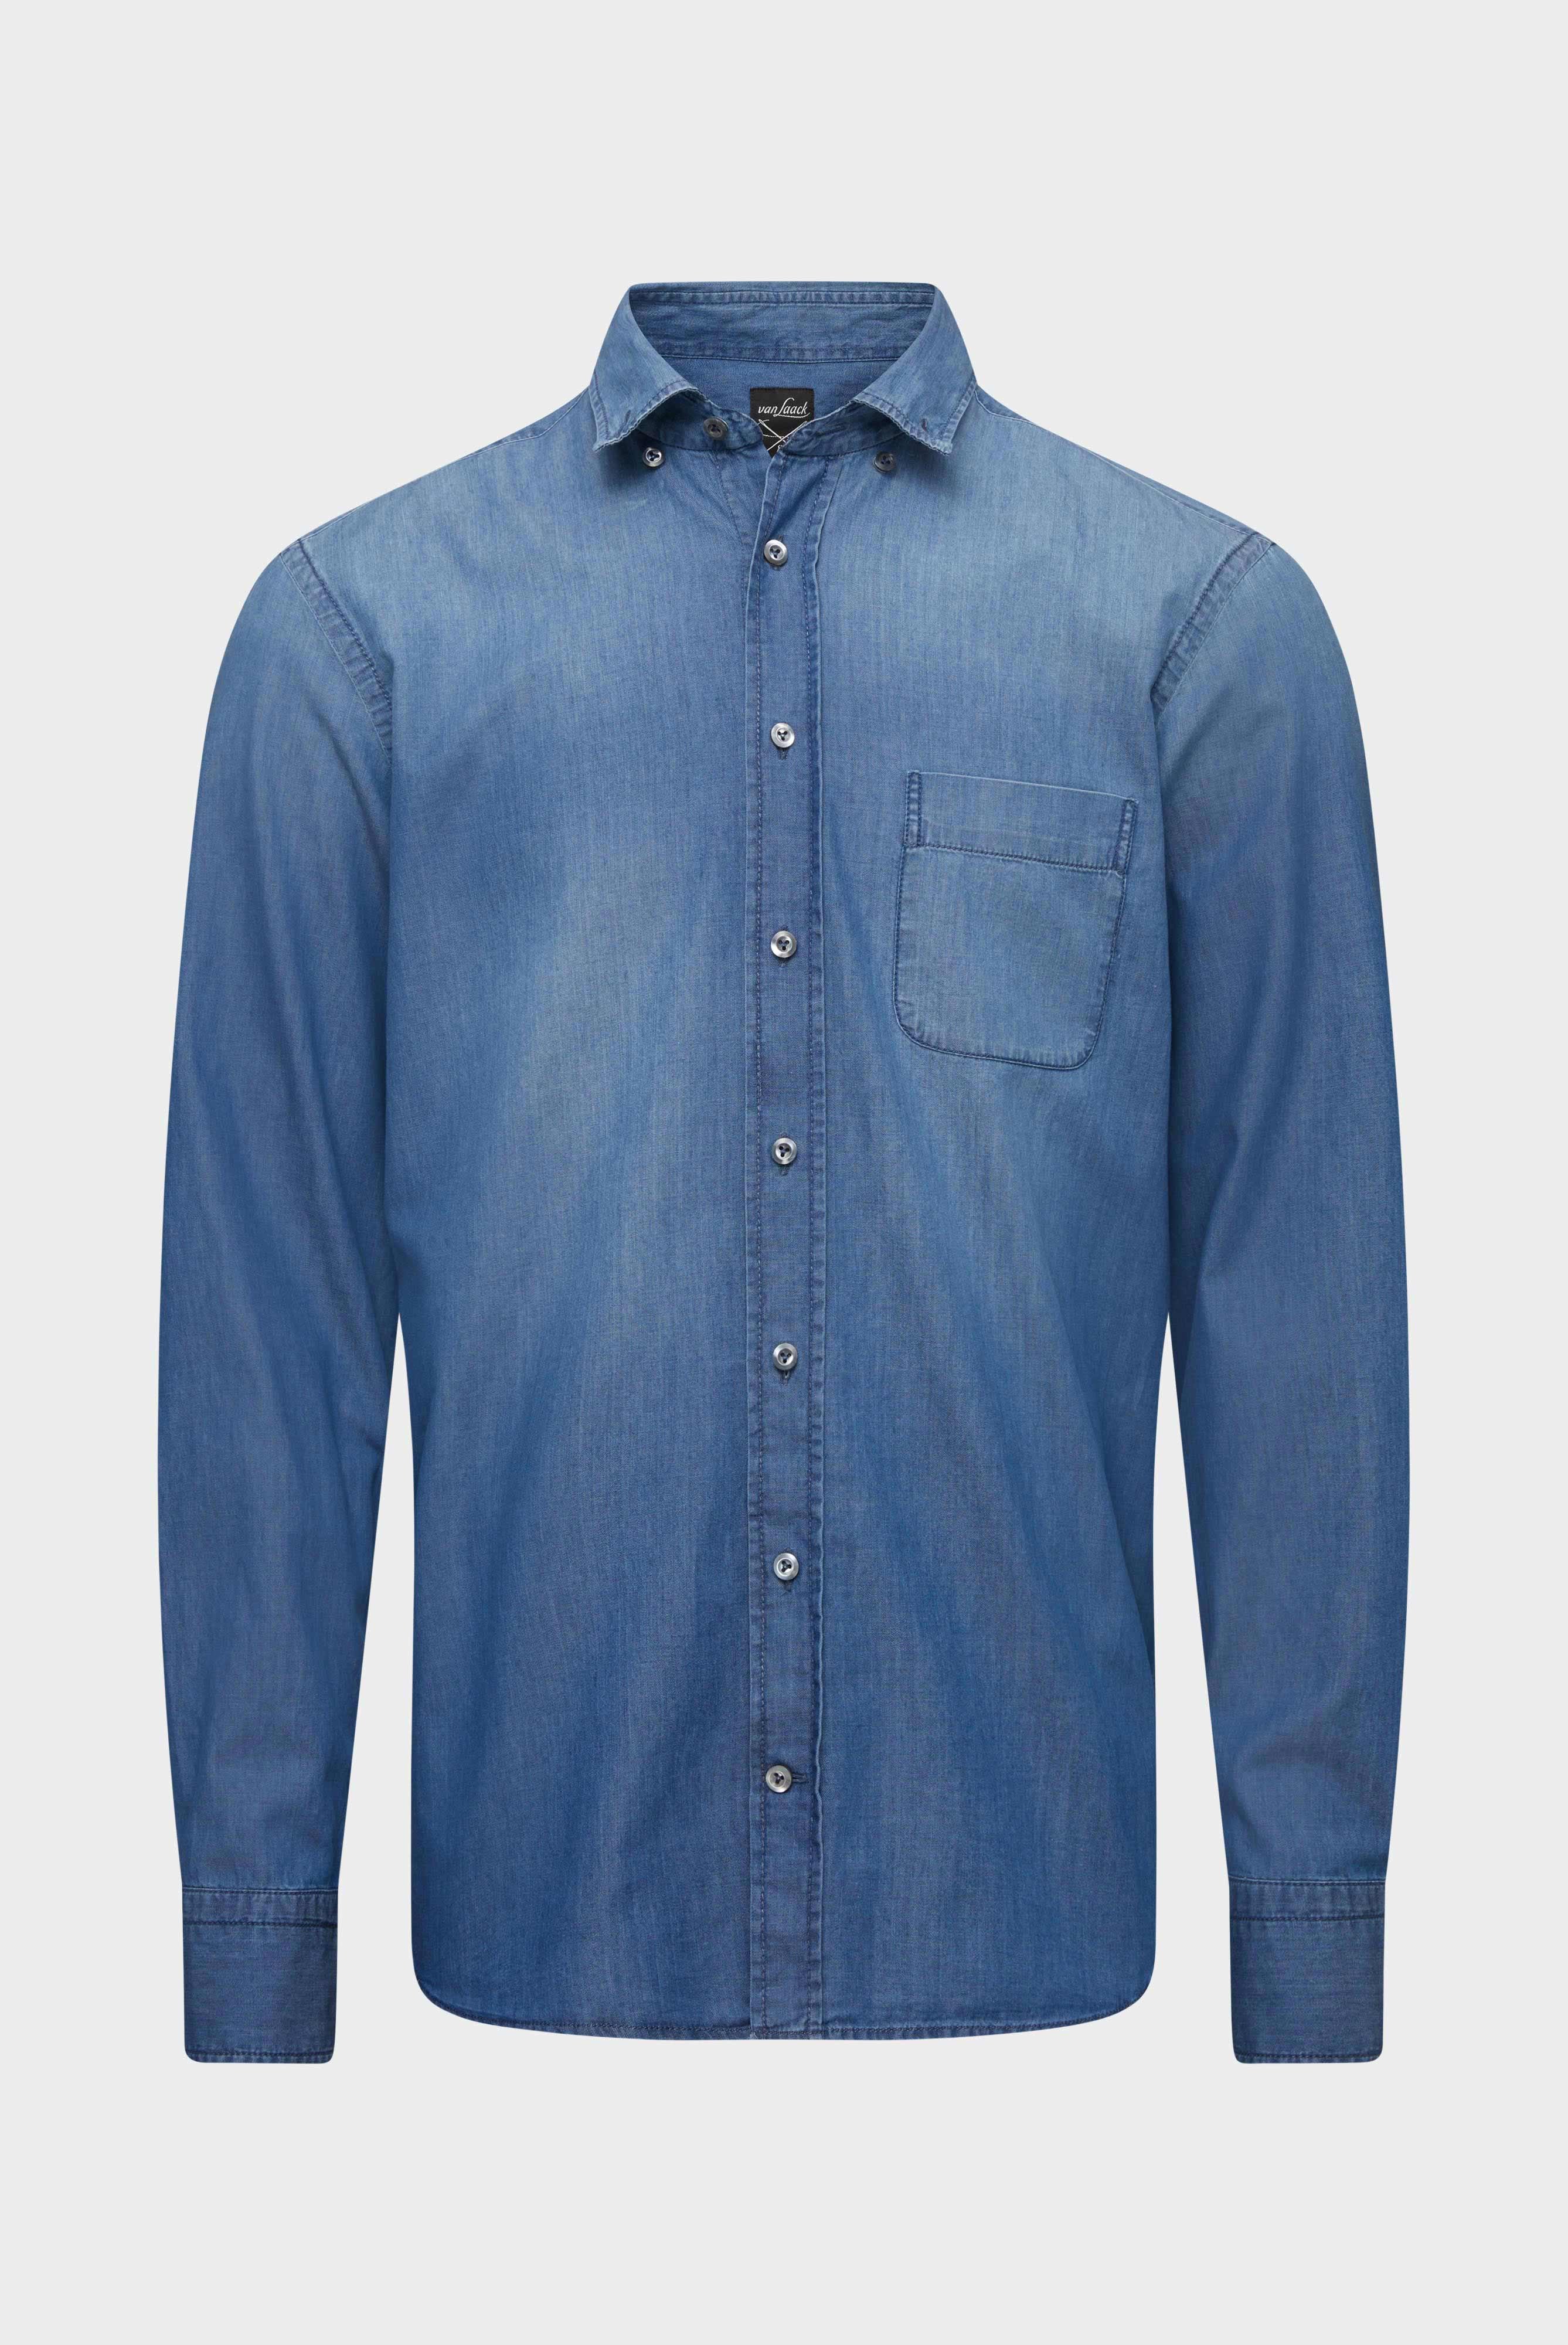 Casual Hemden+Jeans Hemd Tailor Fit+20.2013.ET.155330.740.37